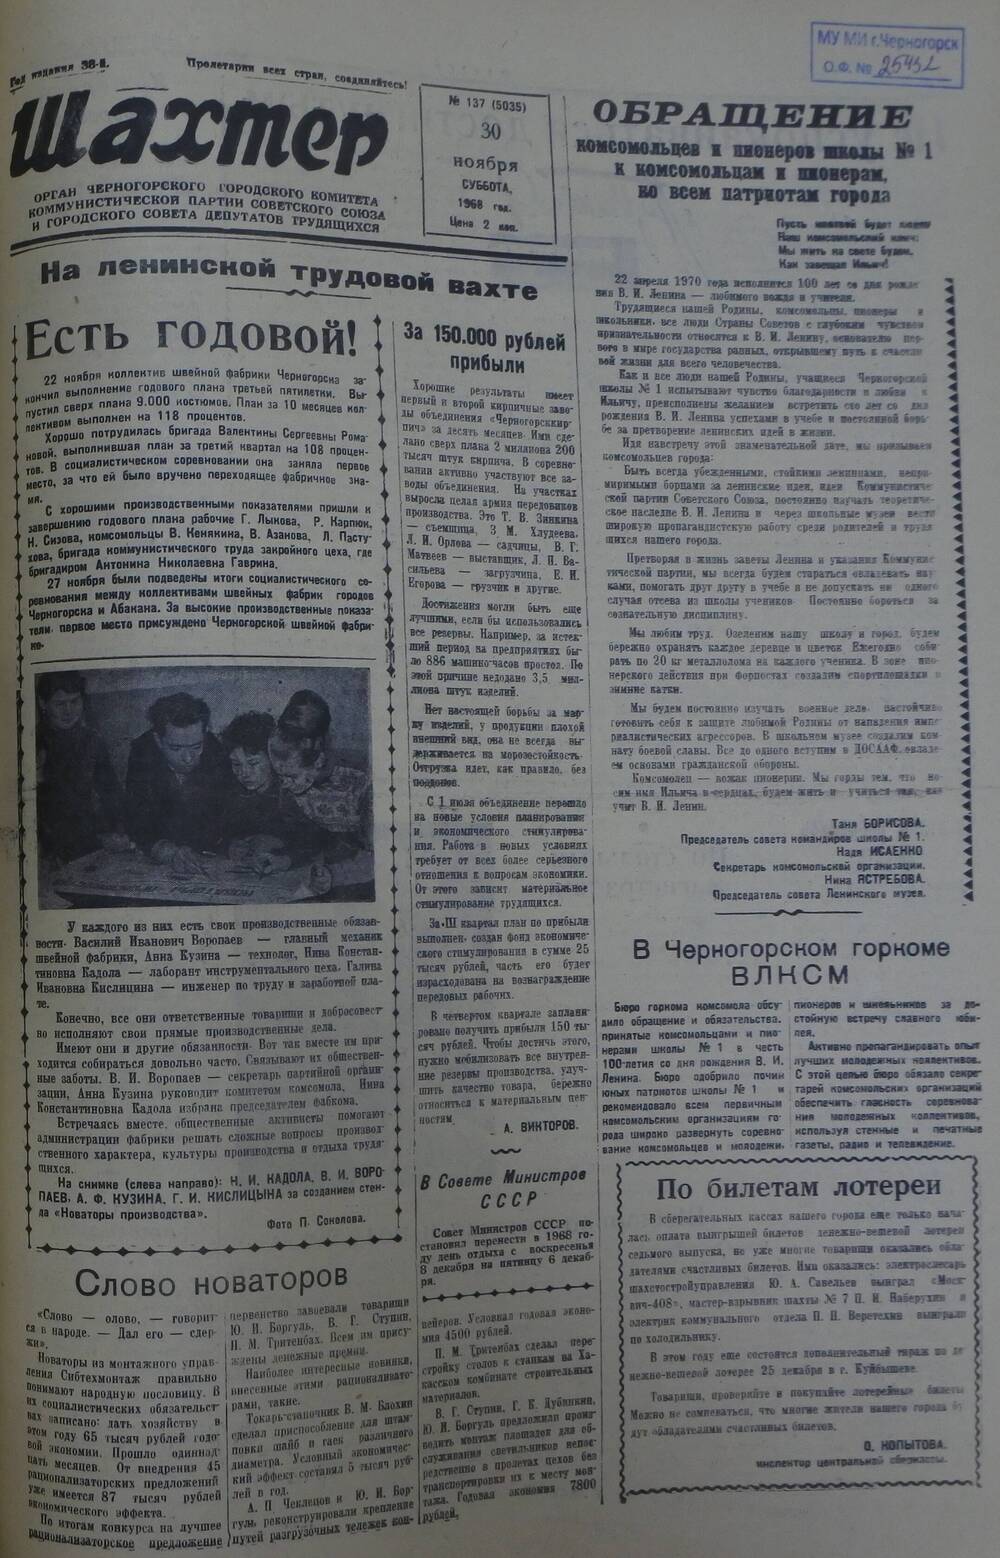 Газета «Шахтер». Выпуск № 137 от 30.11.1968 г.